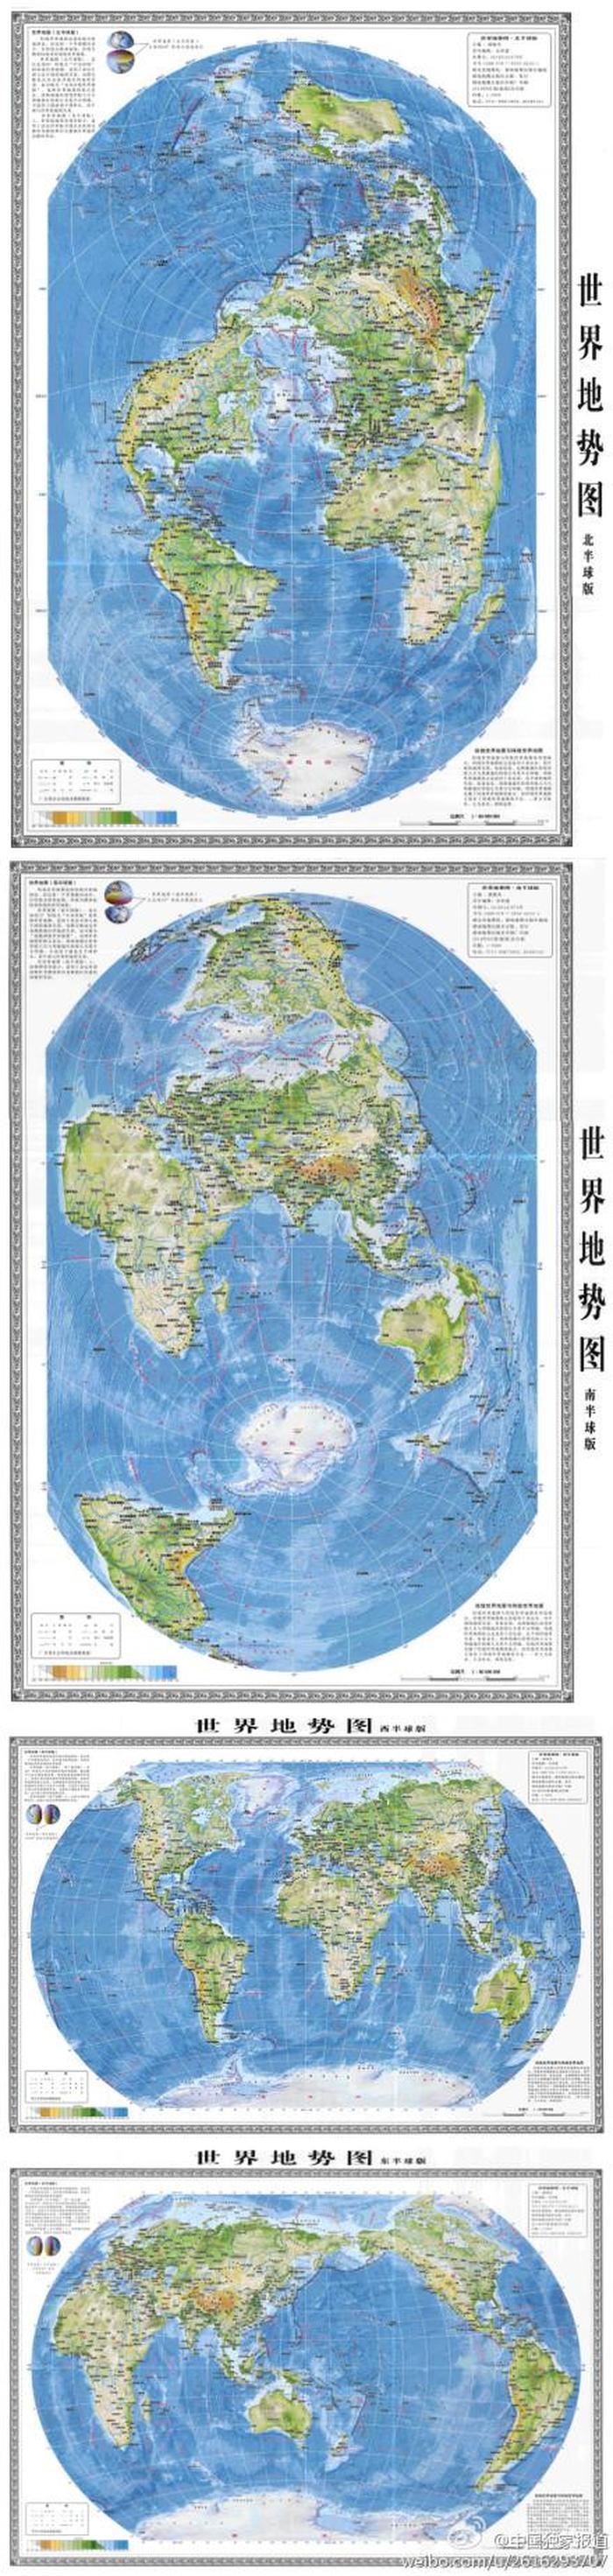 世界地图图片,世界地图轮廓